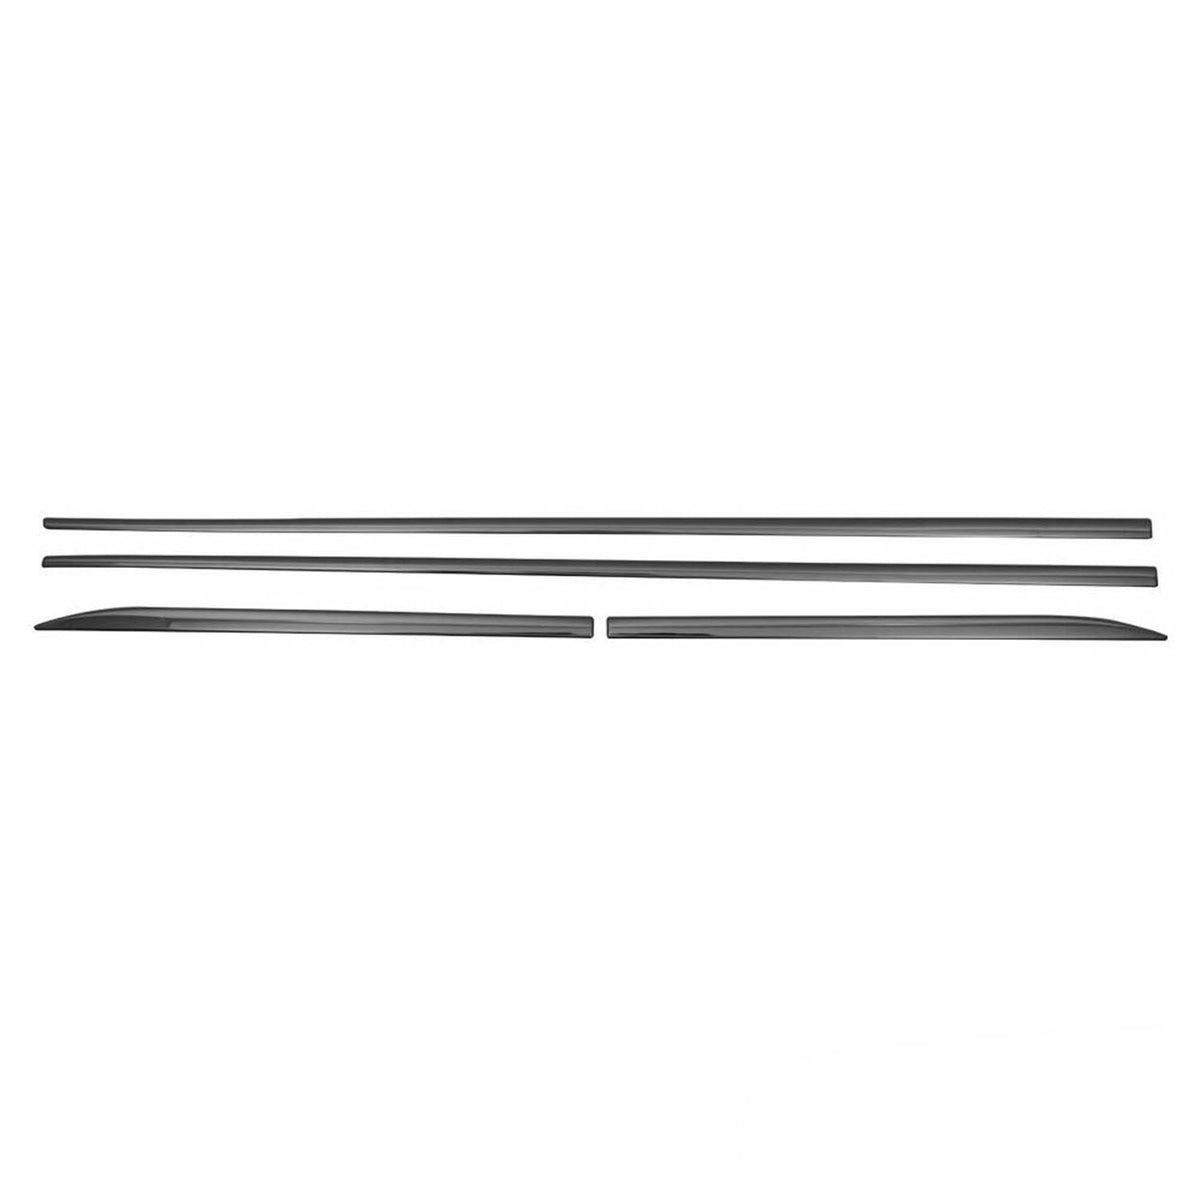 Seitentürleiste Türschutzleiste für Fiat Punto 2005-2018 Chrom Stahl Dunkel 4x